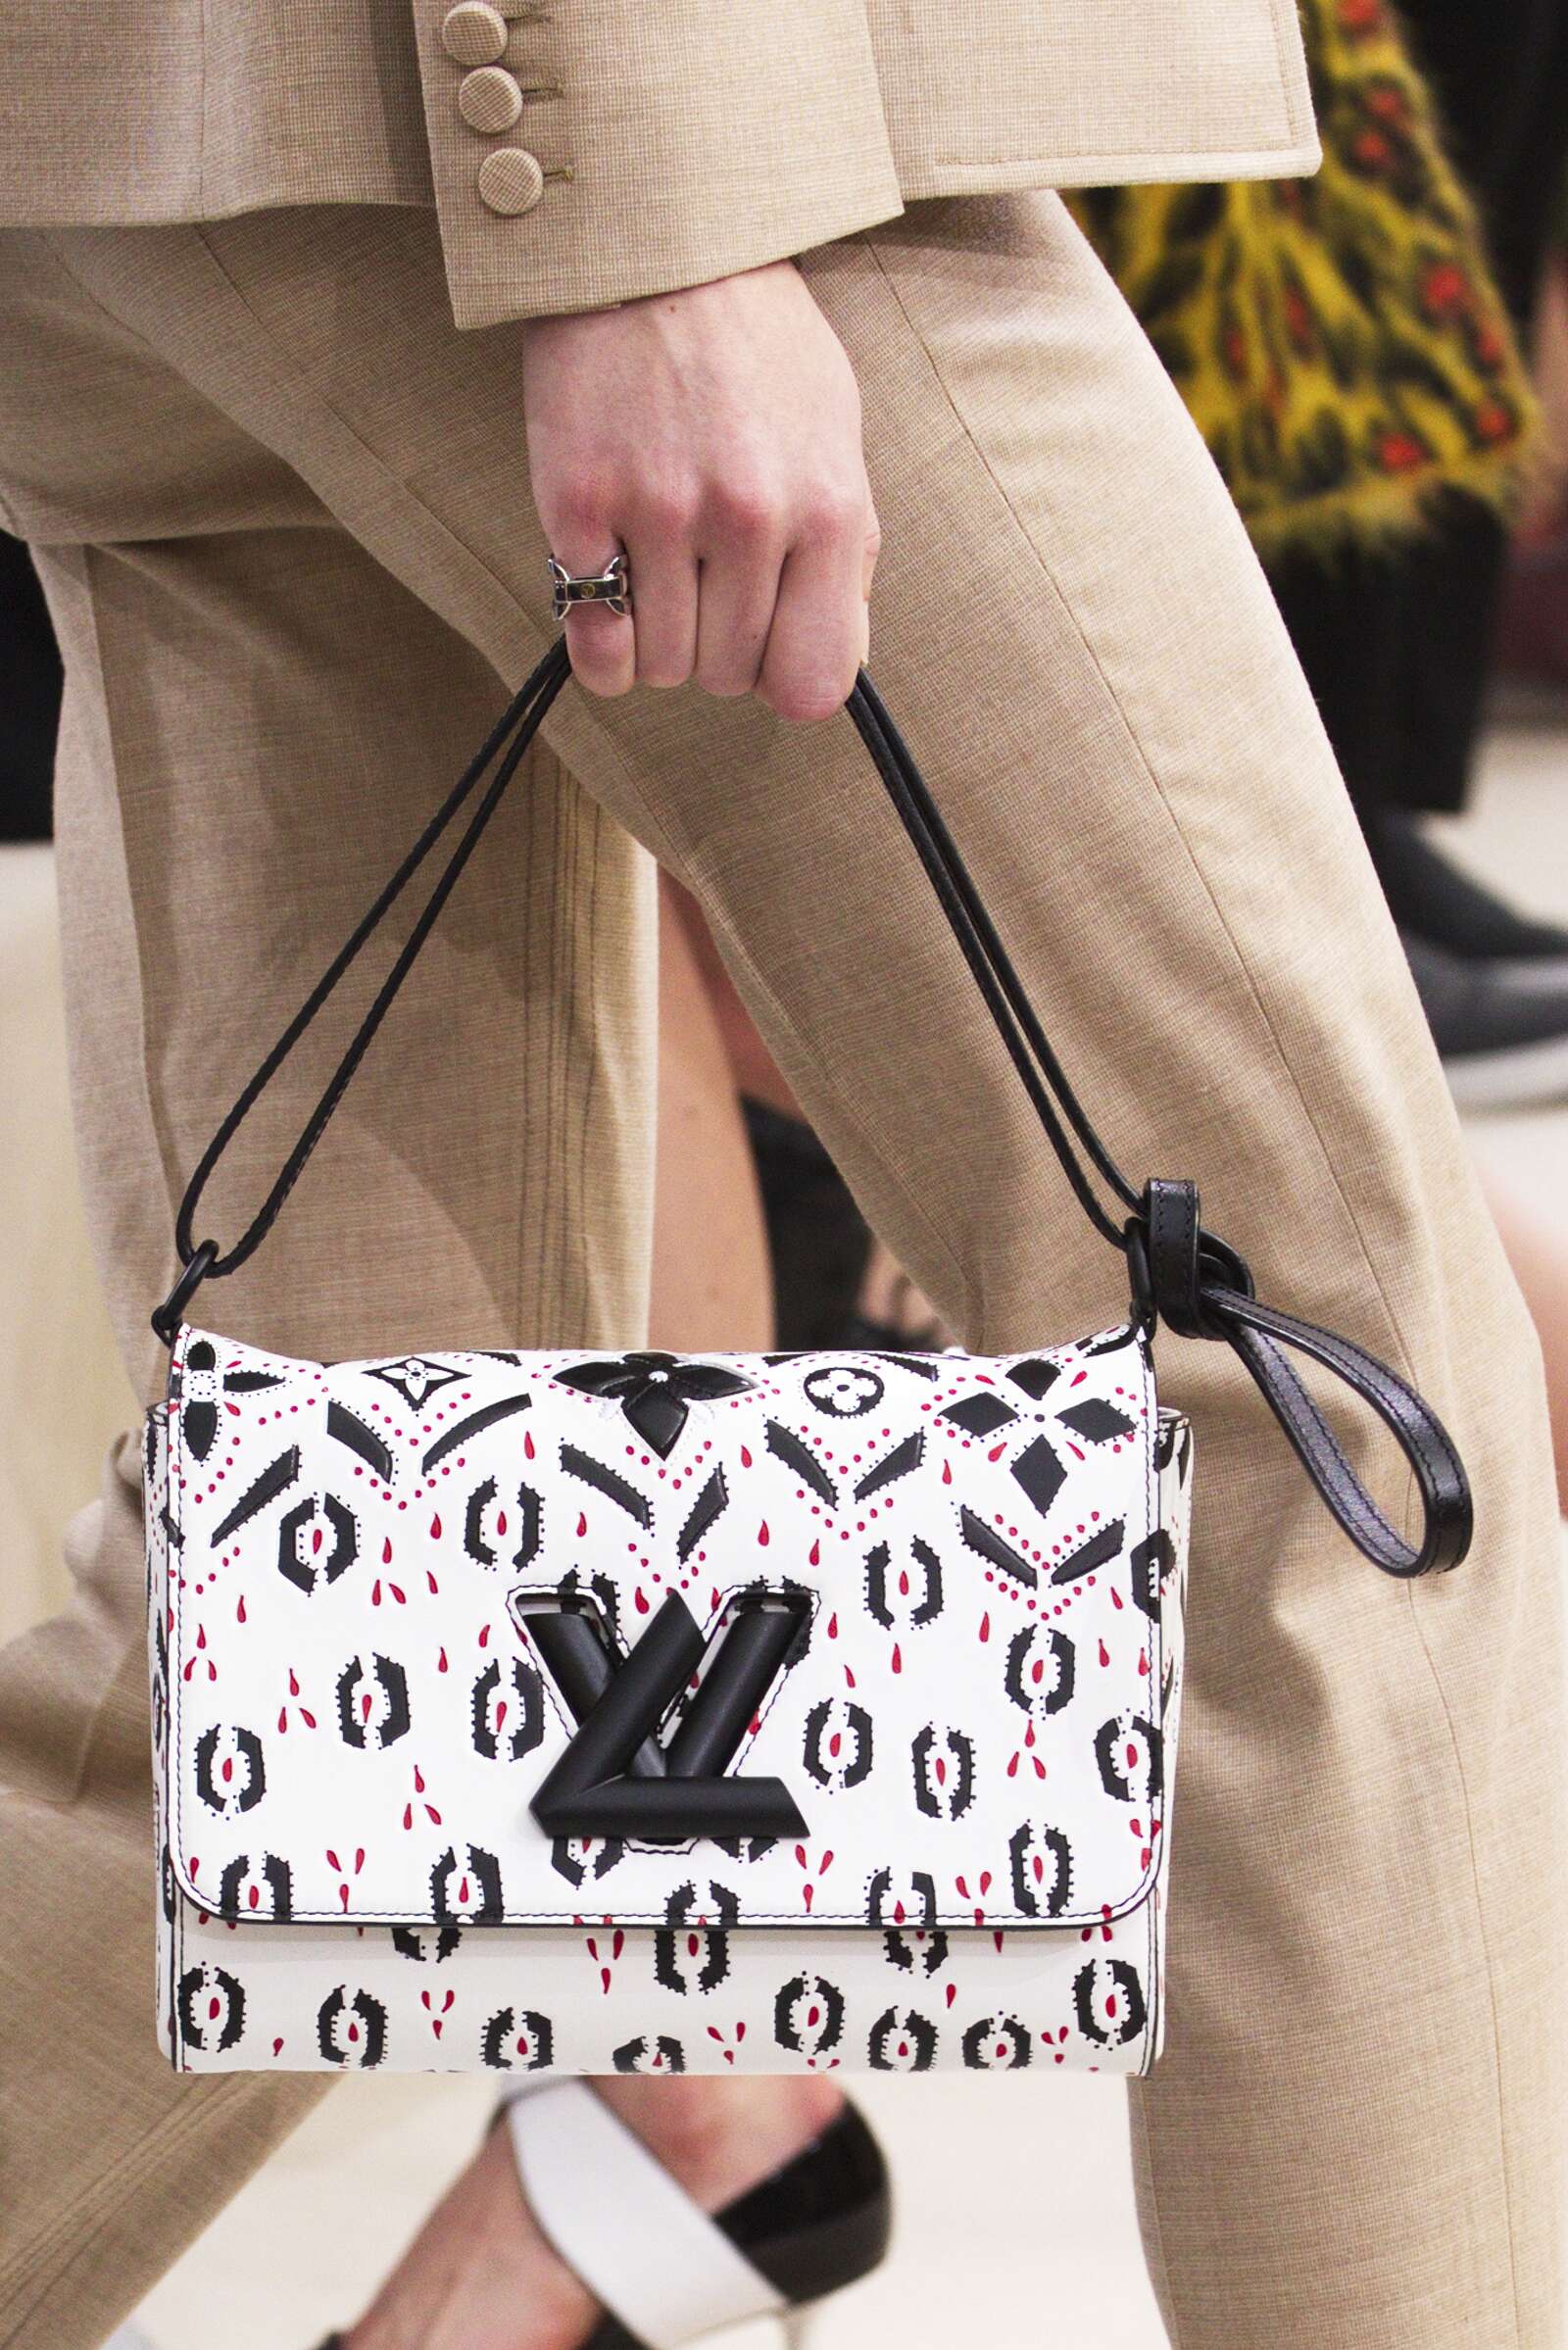 2015 Louis Vuitton Bag Details Collection Woman